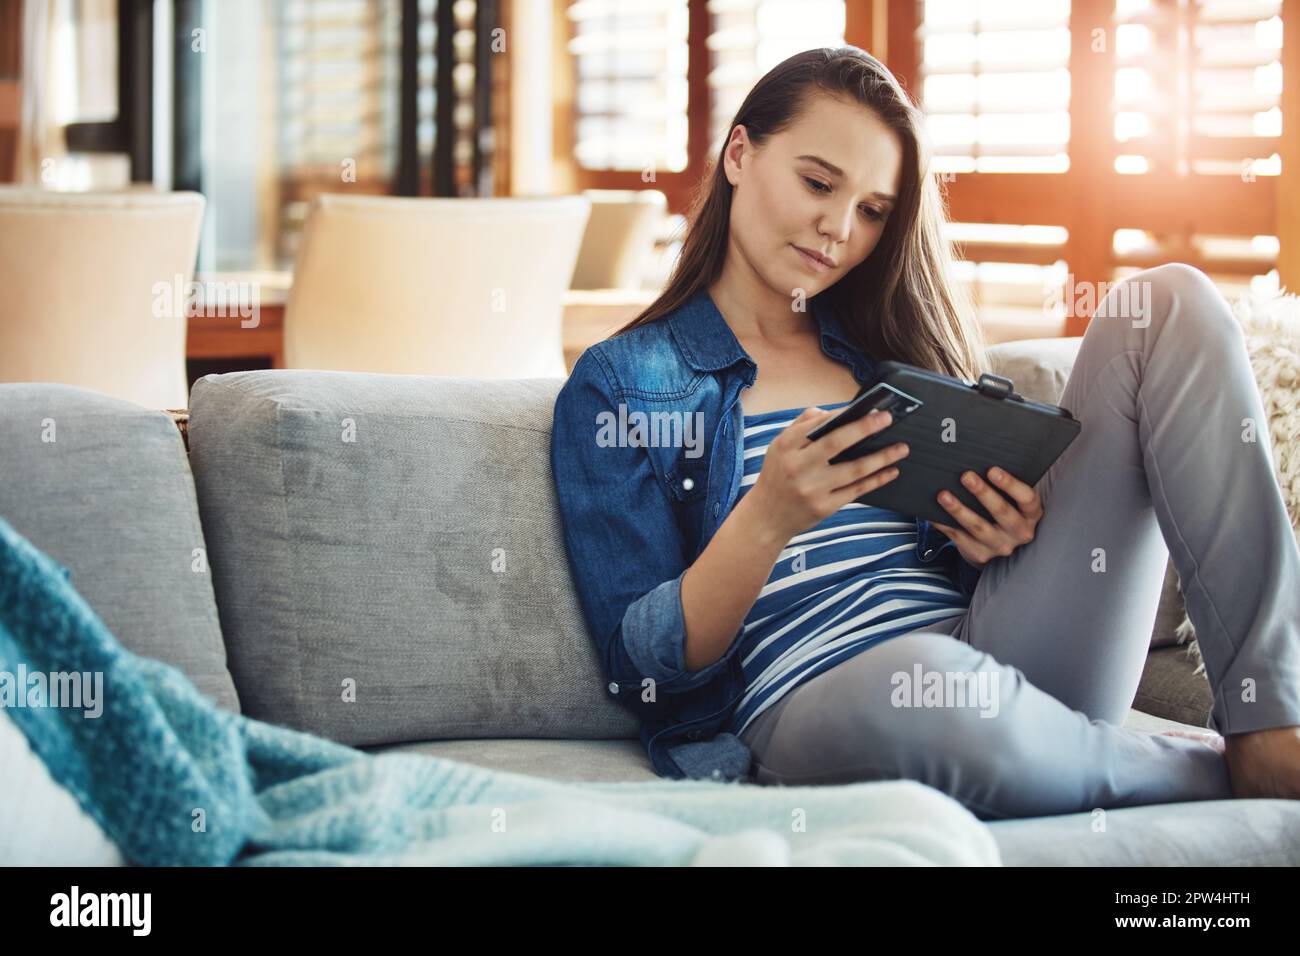 Shopping dans le confort de la maison. une jeune femme attrayante utilisant sa tablette pour faire des achats en ligne tout en se relaxant sur le canapé à la maison. Banque D'Images